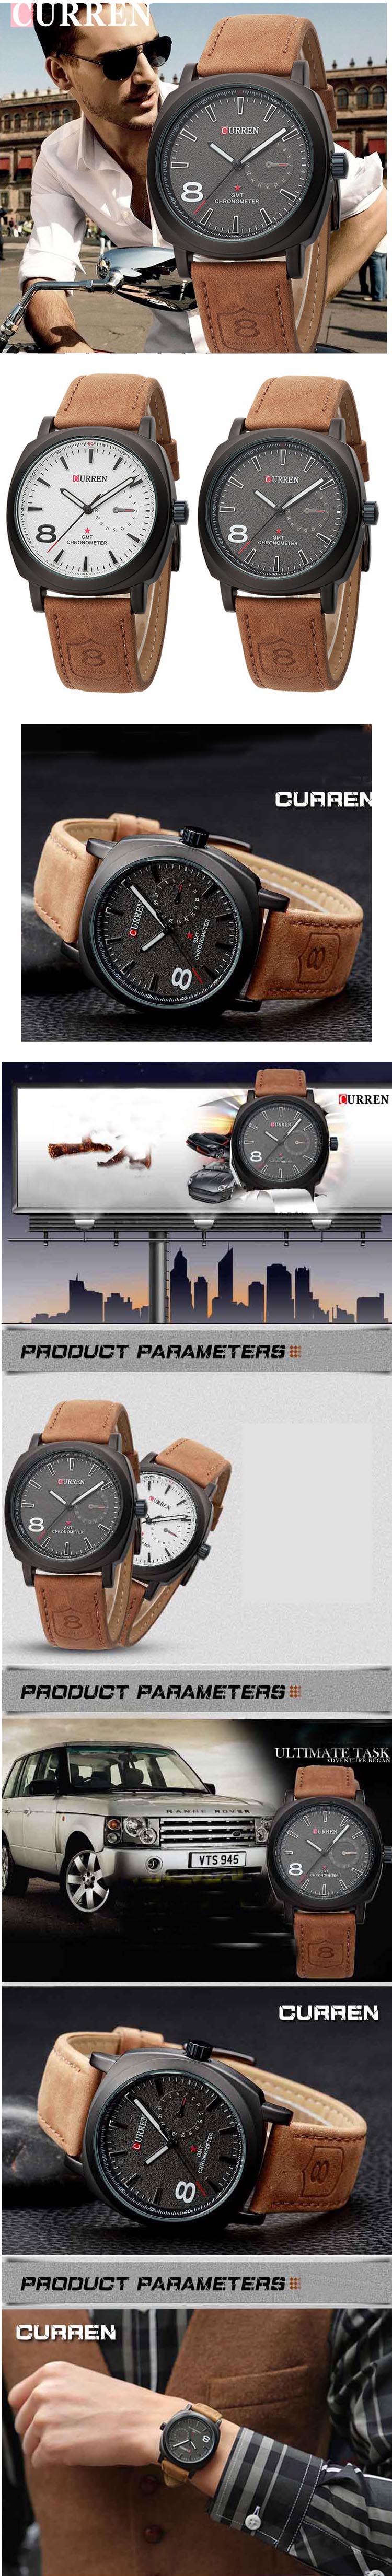 jual jam tangan pria online merk curren anti air atau water resistance